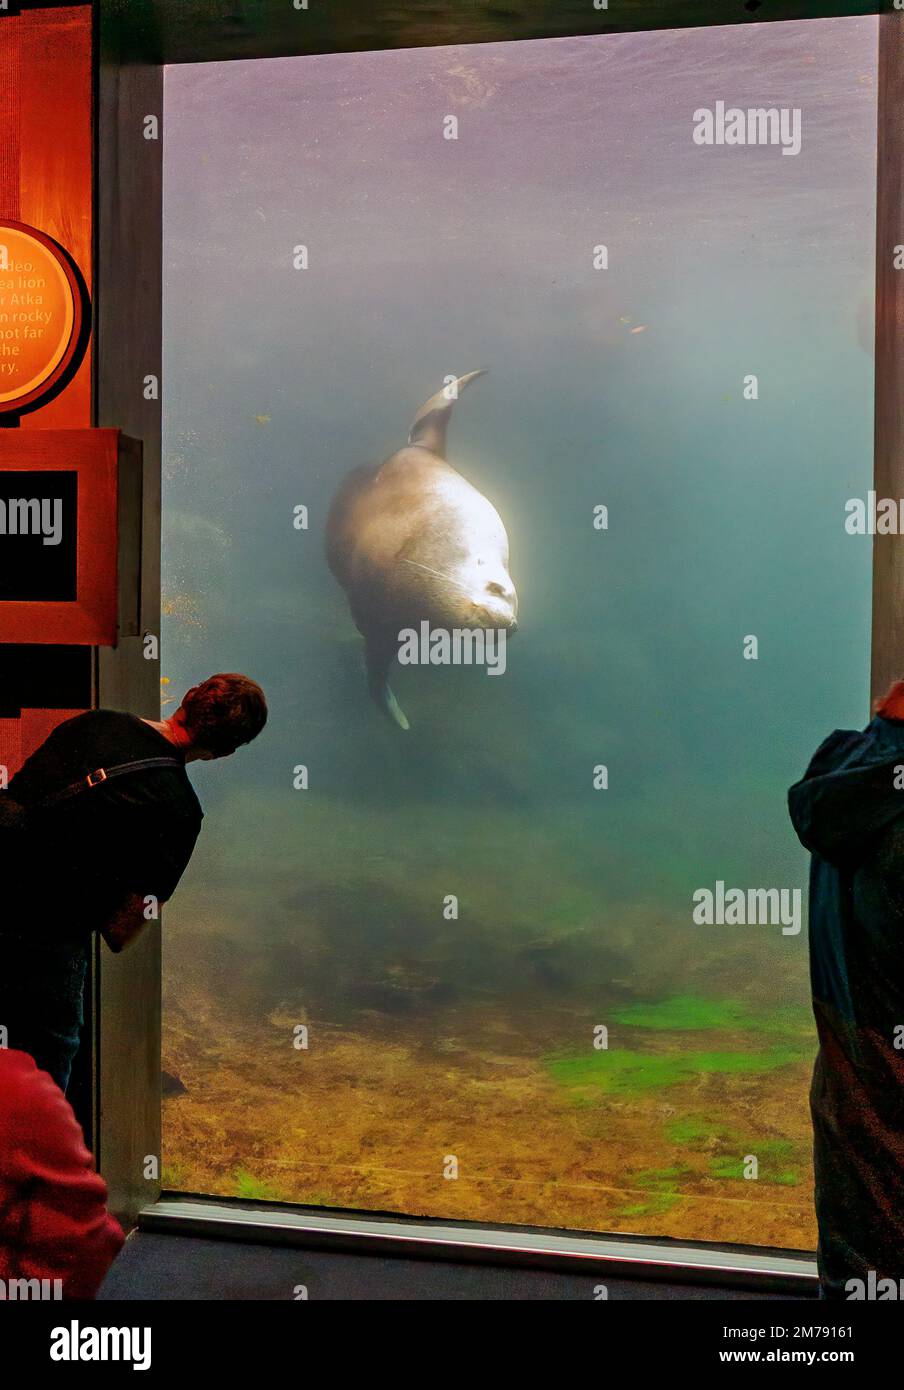 Turisti che visitano Steller Sea Lion; Eumetopias jubatus; Alaska SeaLife Center; Resurrection Bay; Seward; Alaska; USA Foto Stock